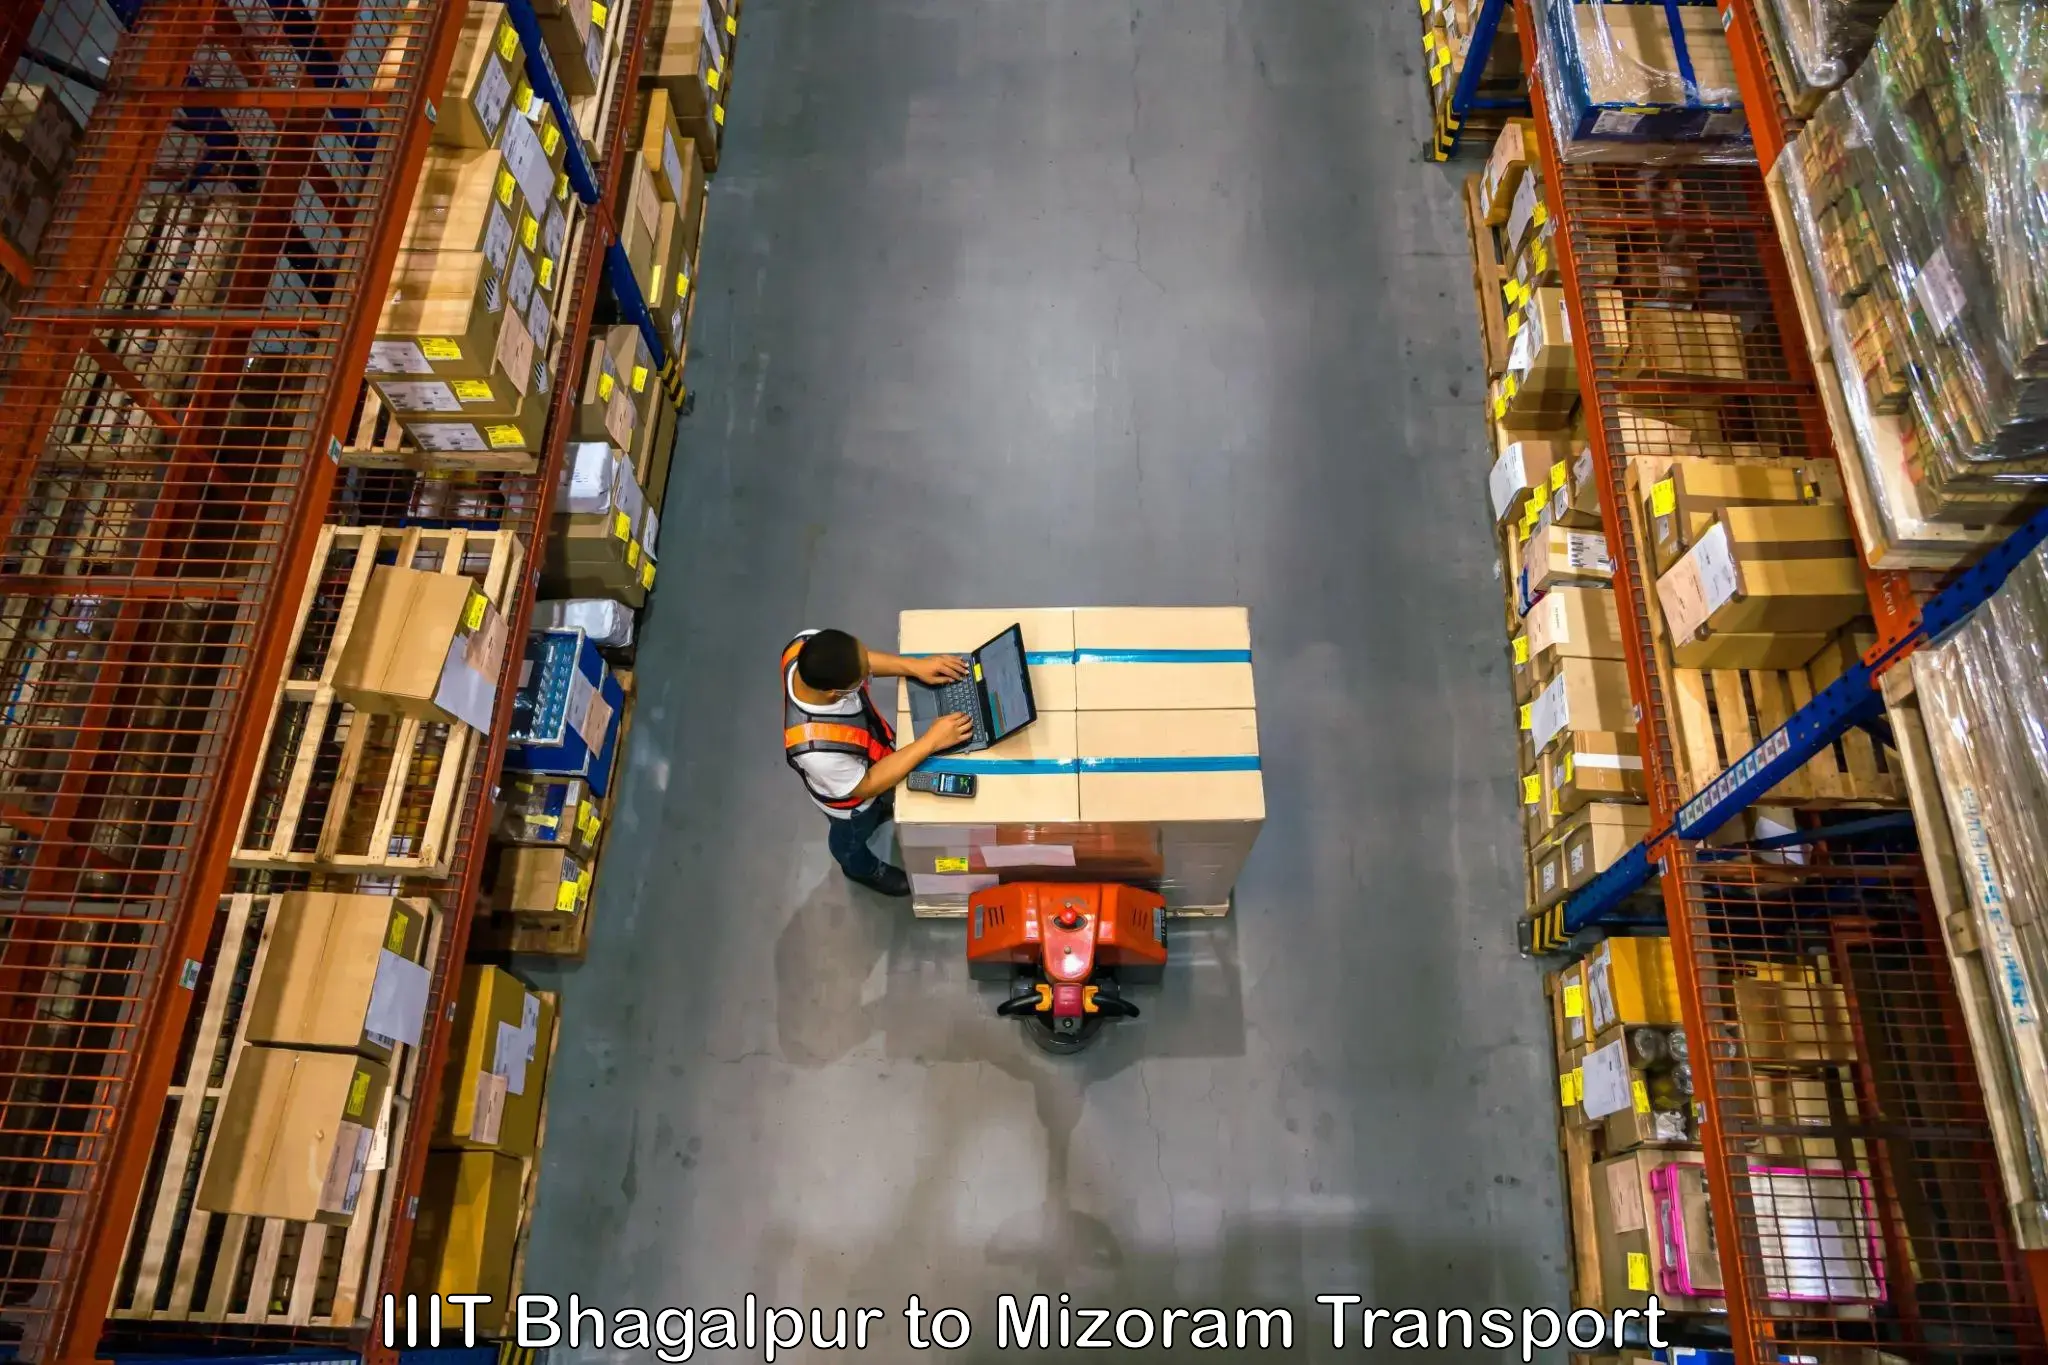 Furniture transport service IIIT Bhagalpur to Thenzawl